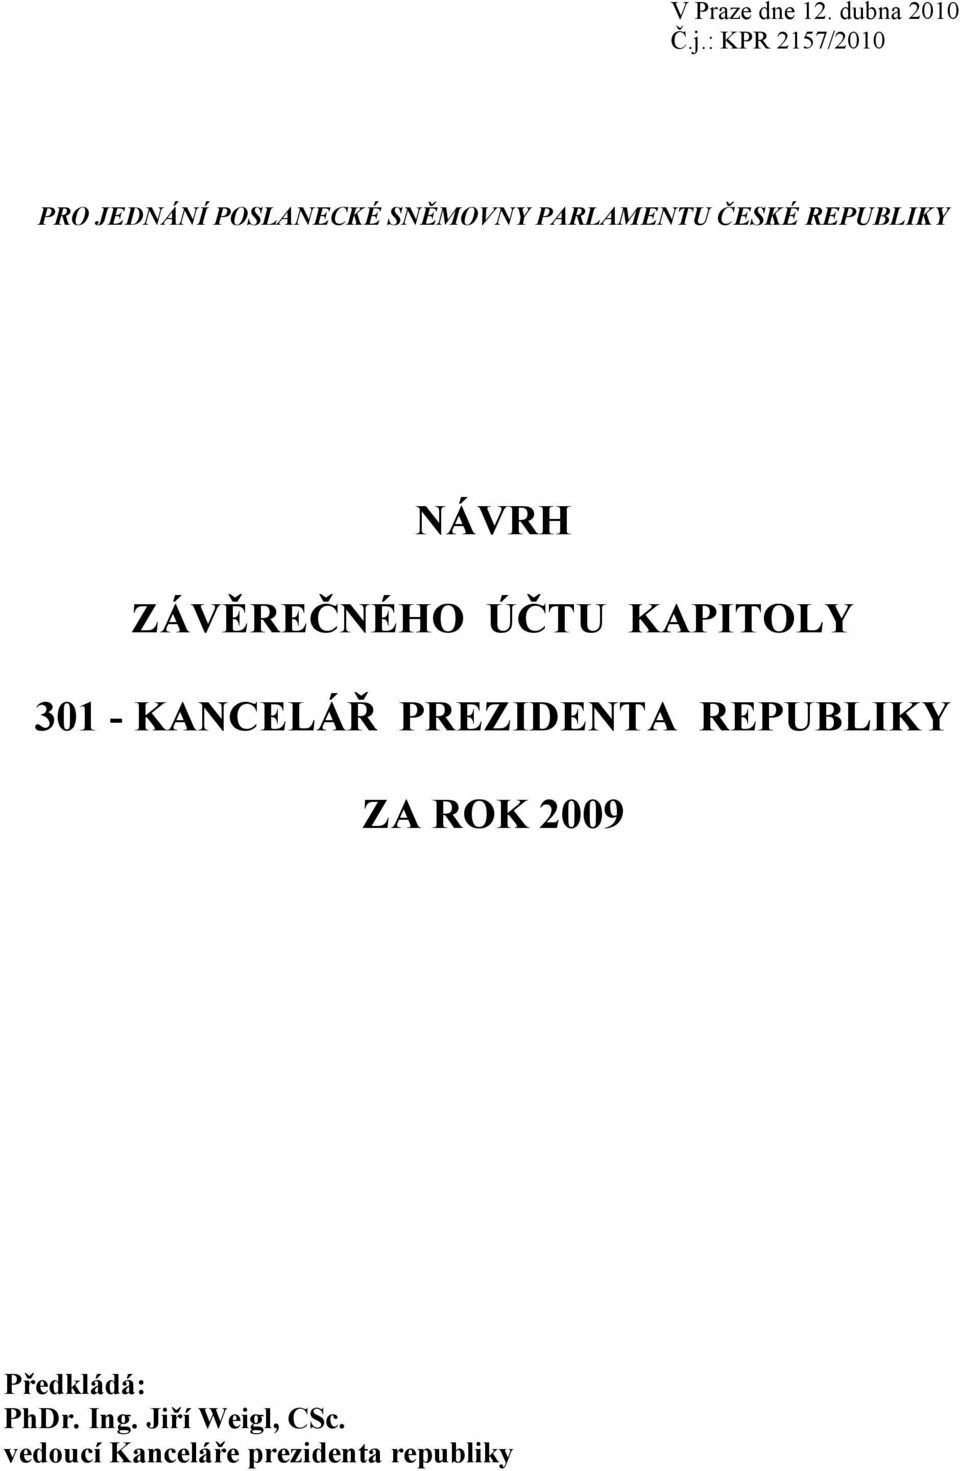 REPUBLIKY NÁVRH ZÁVĚREČNÉHO ÚČTU KAPITOLY 301 - KANCELÁŘ